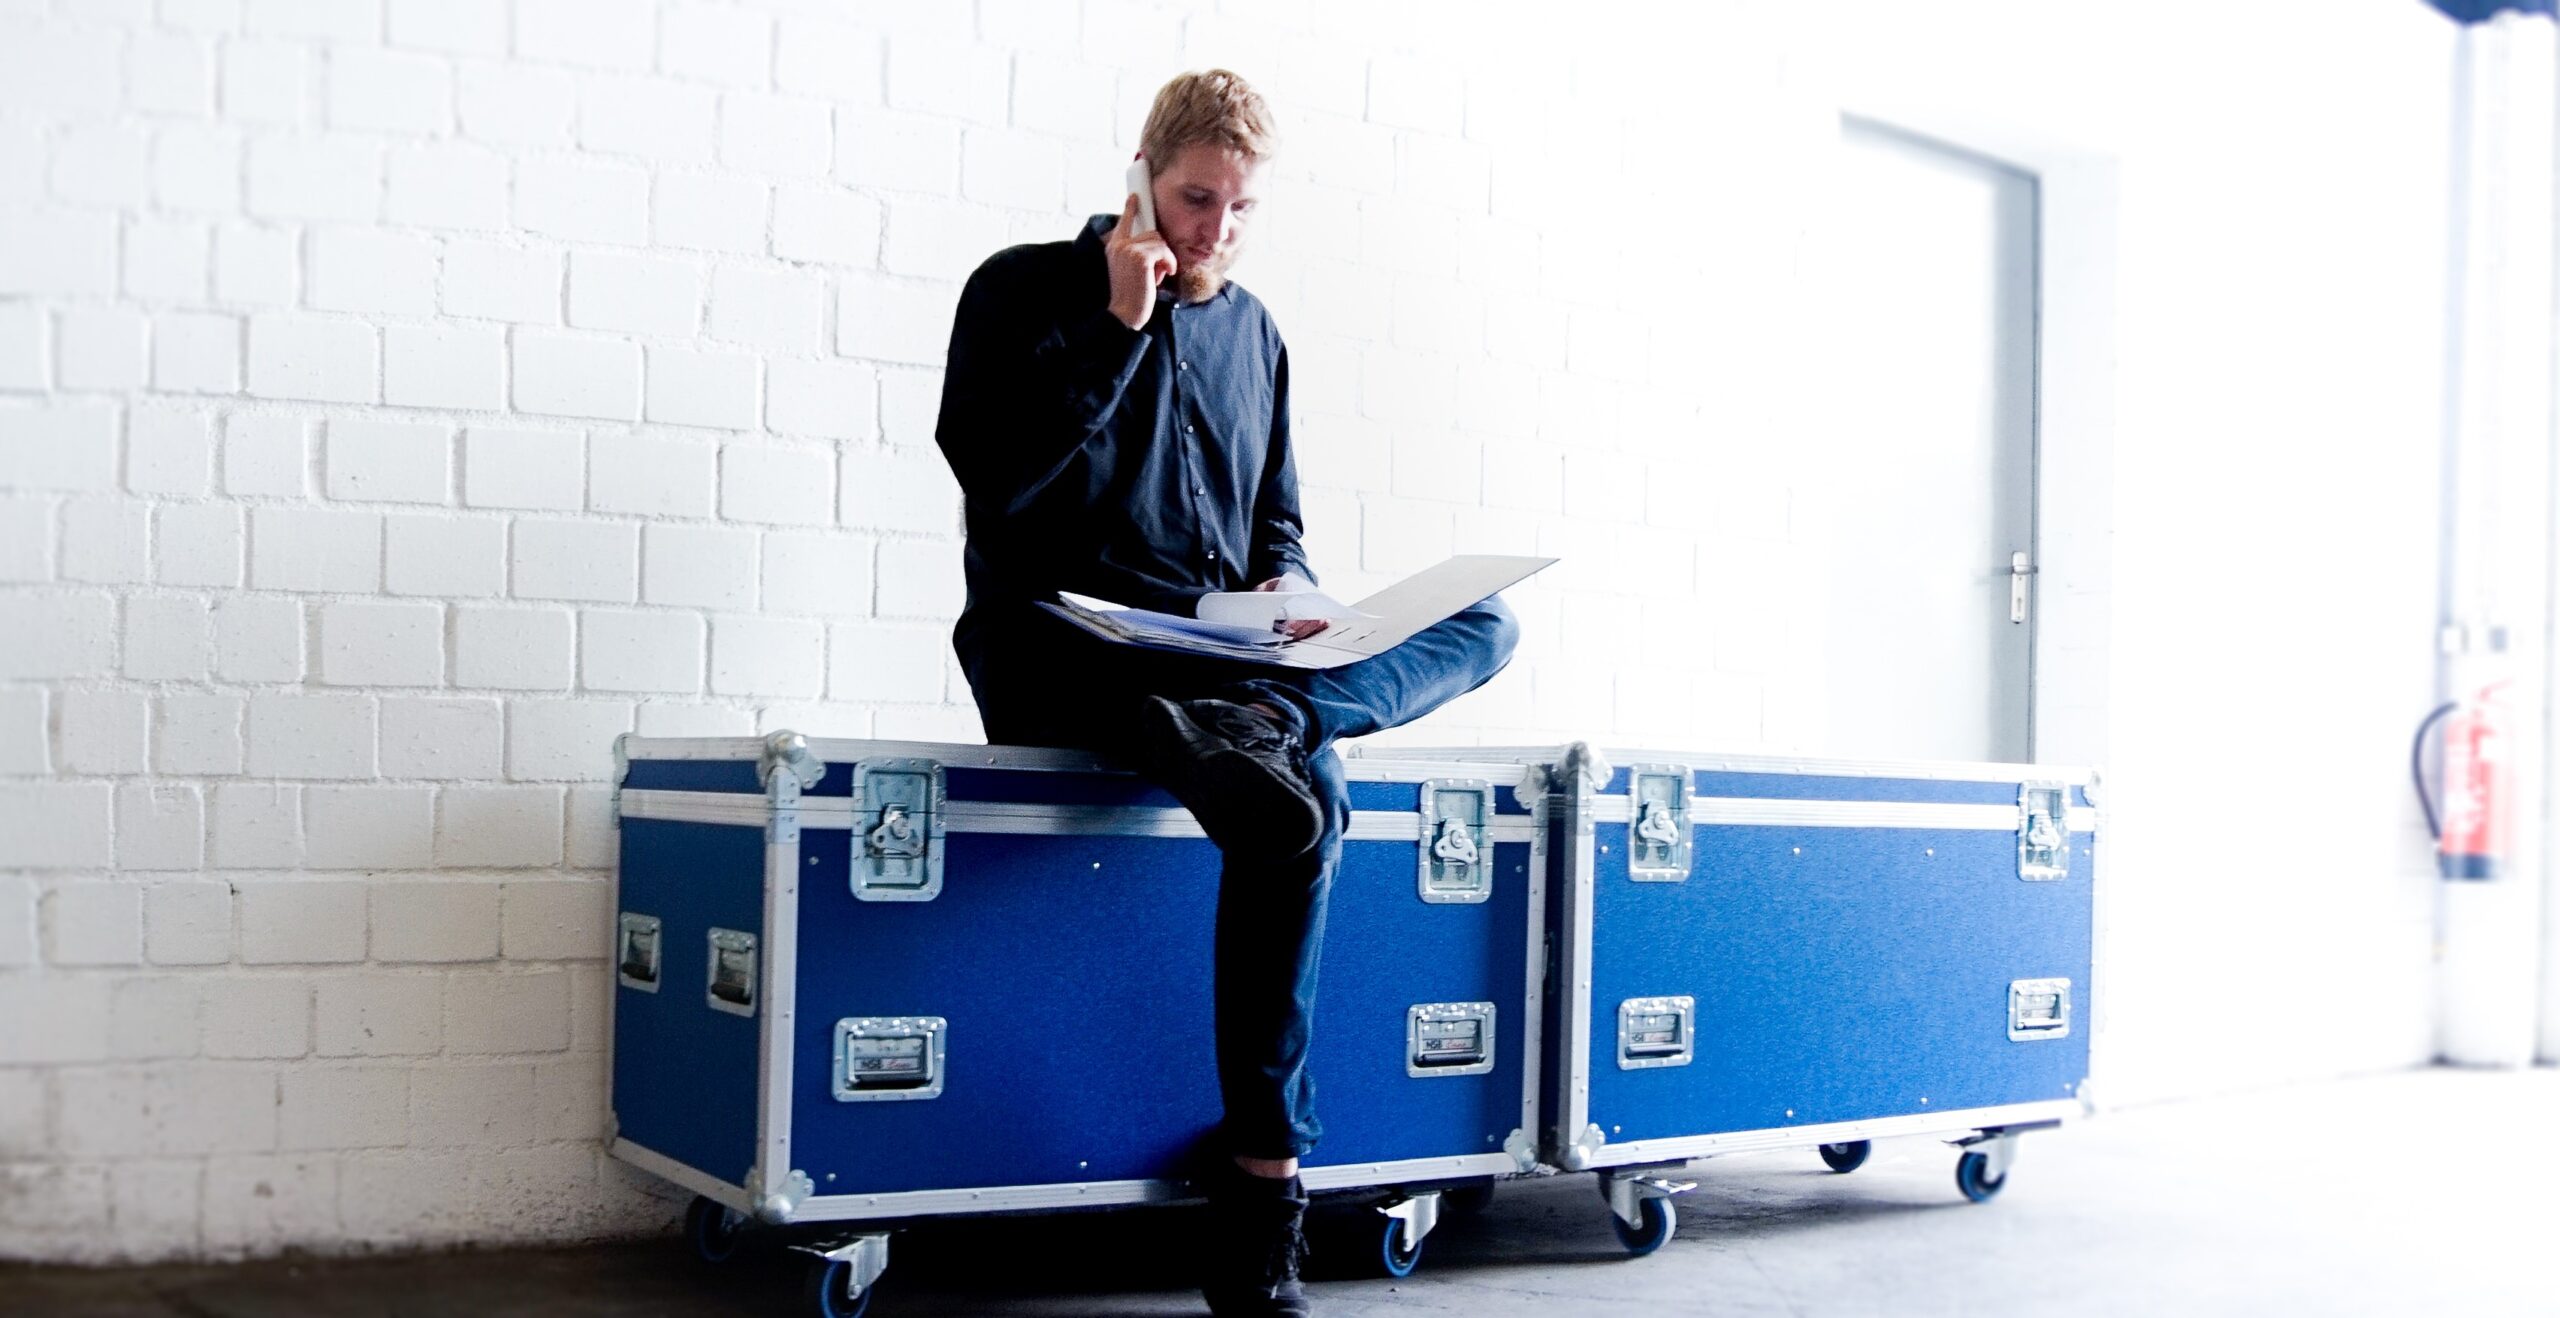 Projektmanager und Geschäftsführer Felix Nüske sitzend auf einem blauen Case, Telefoniert und schaut in einen Aktenordner.